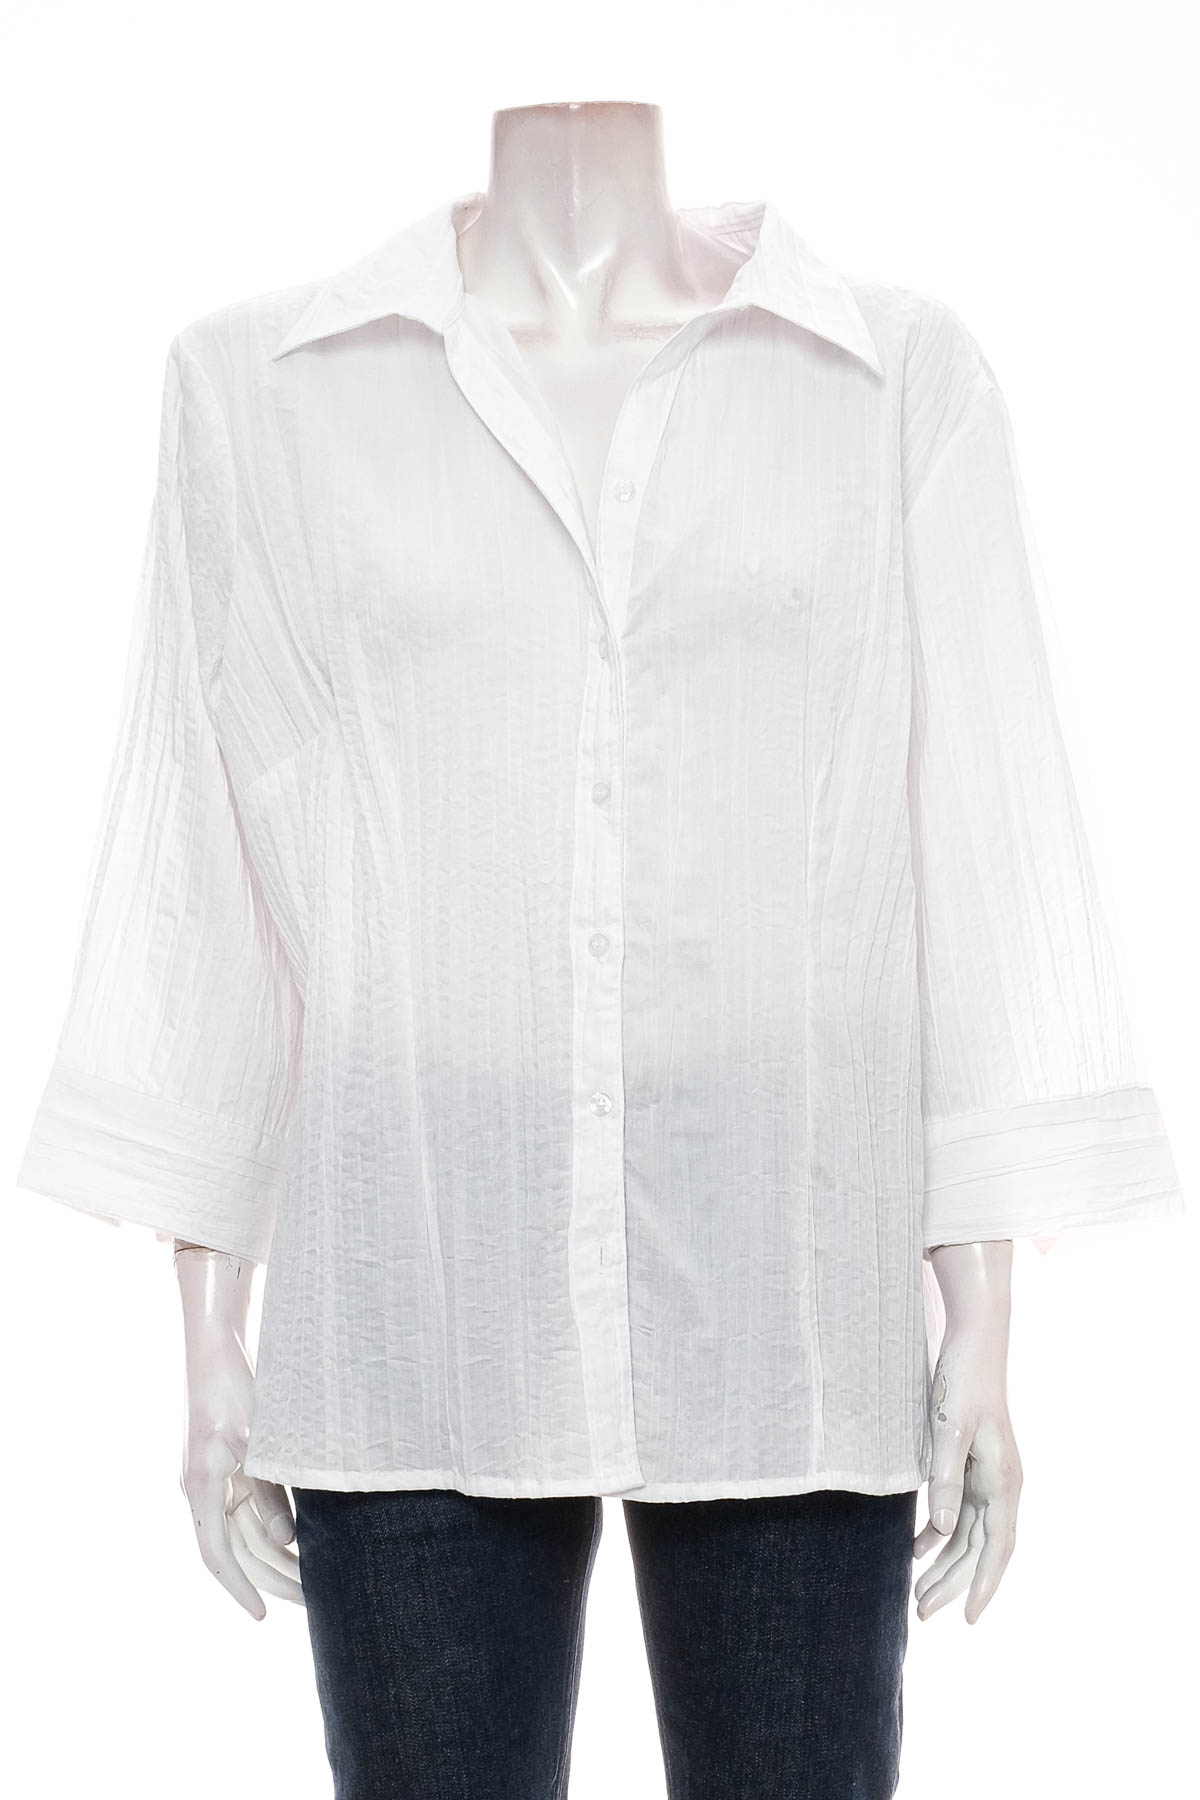 Γυναικείο πουκάμισο - Michele Boyard - 0